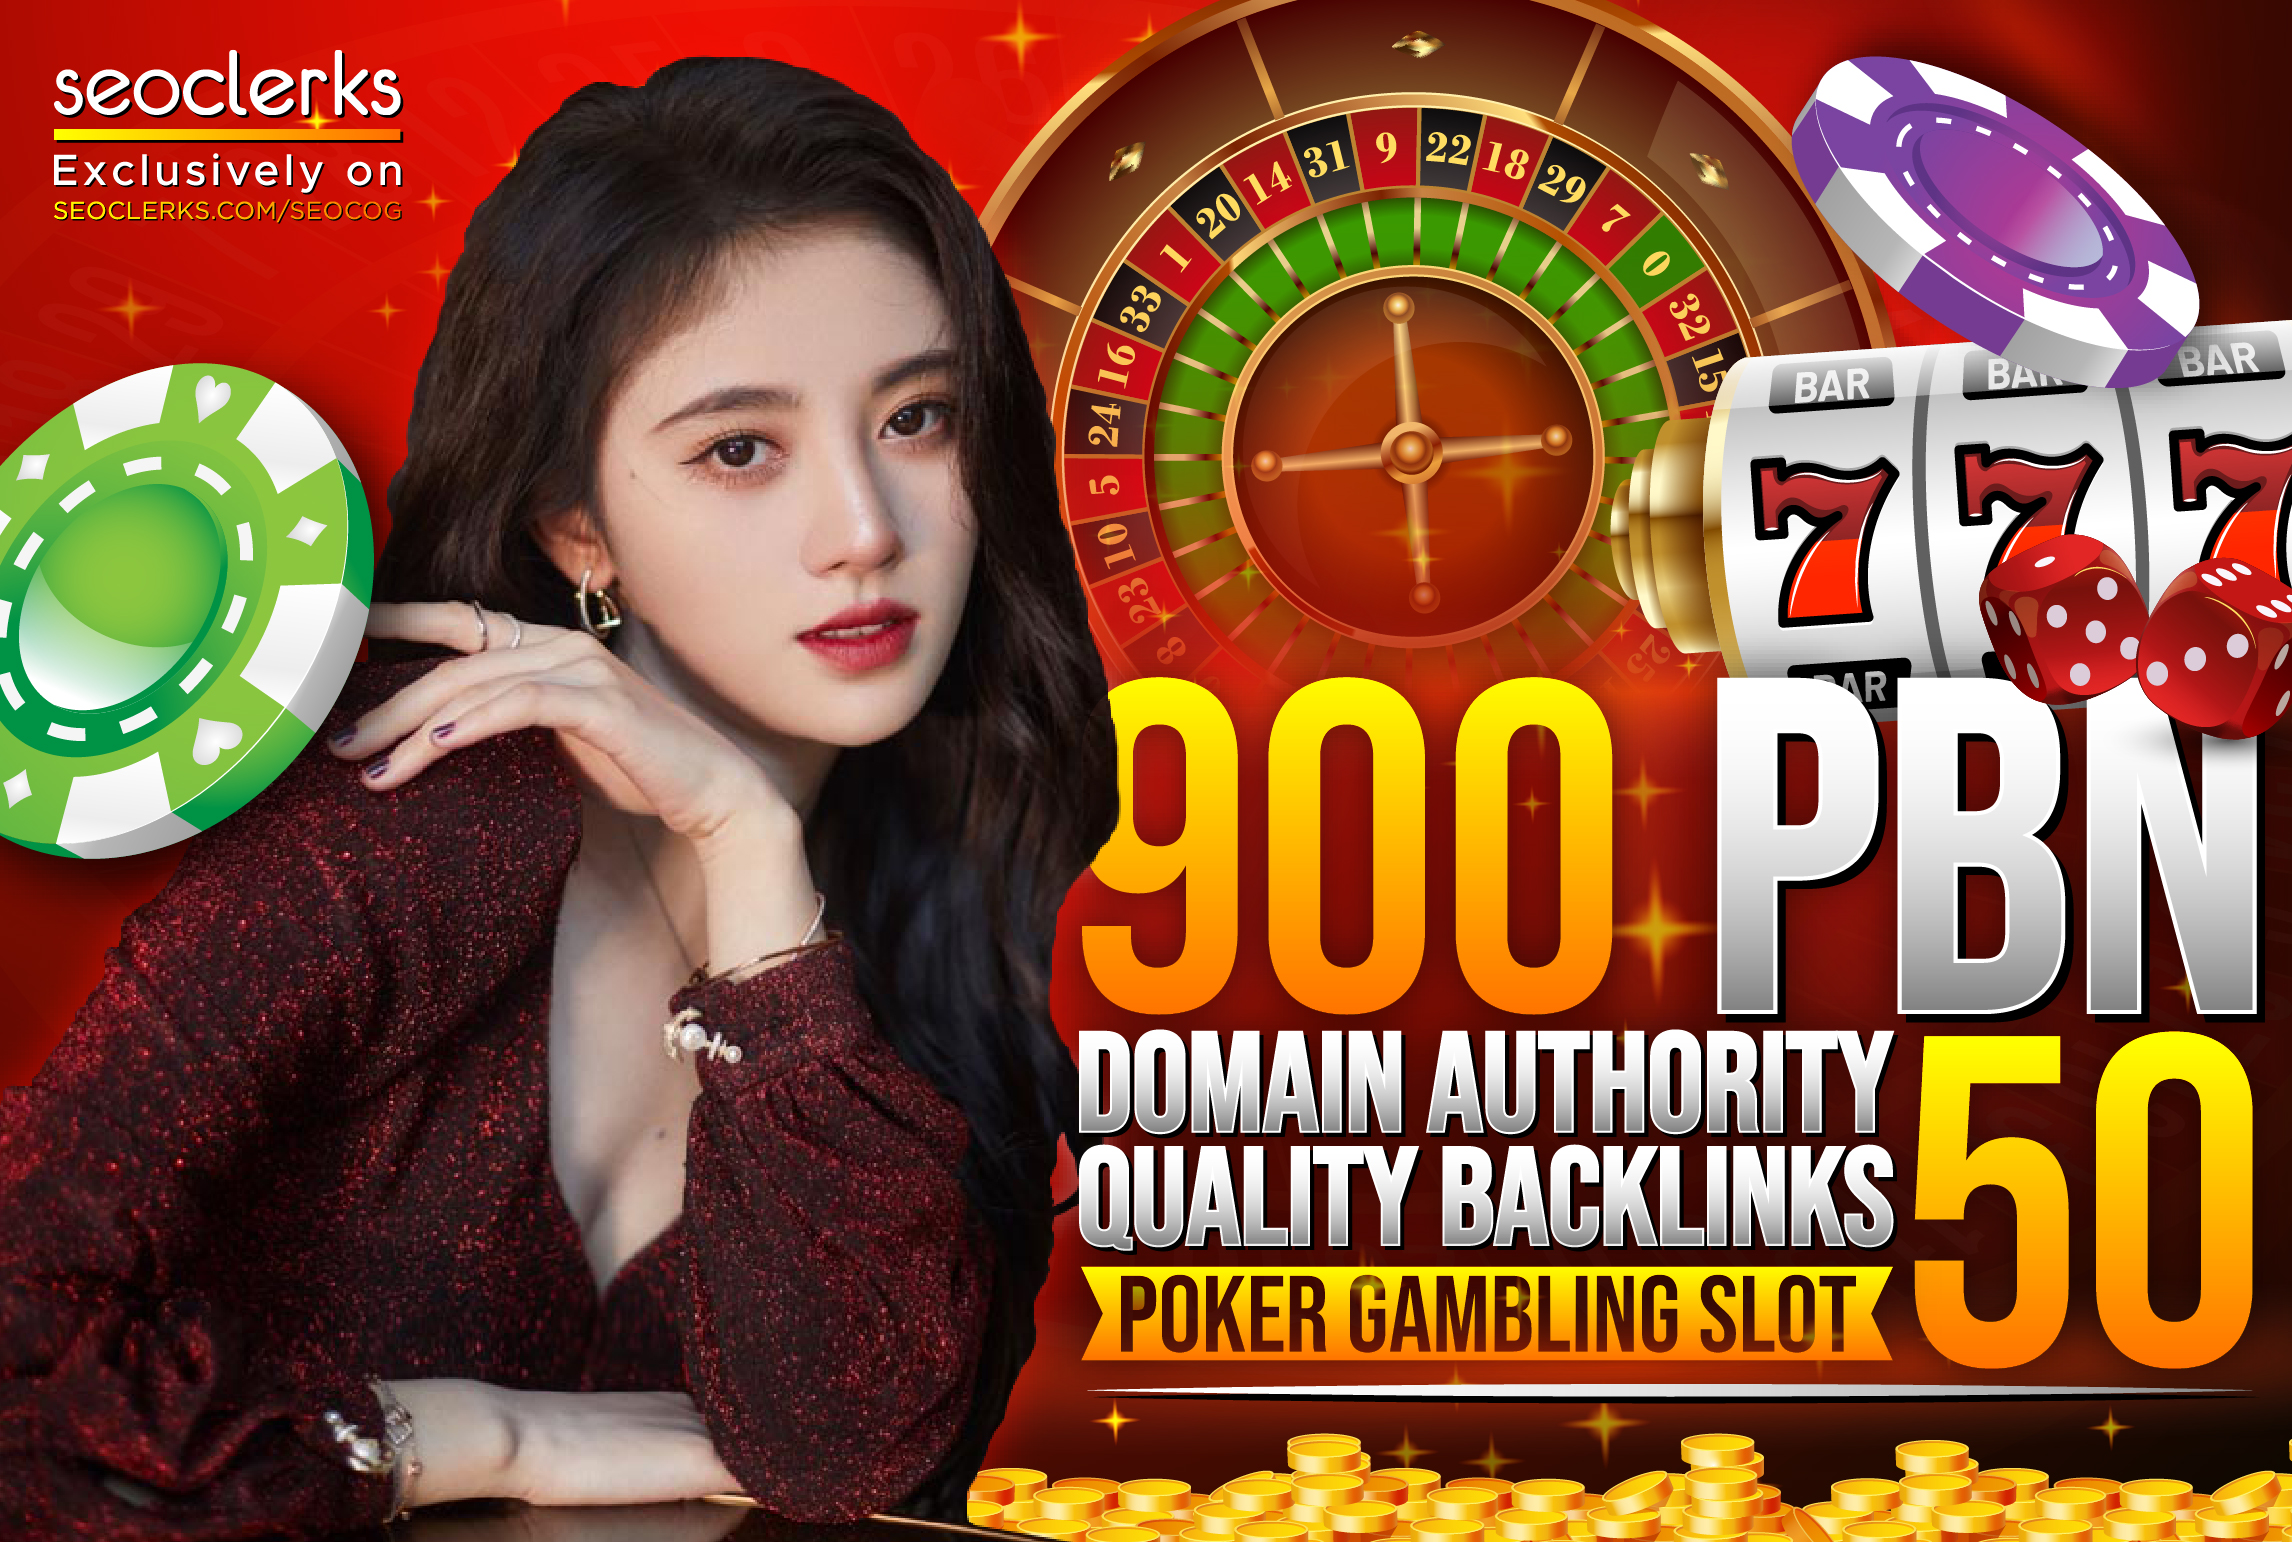 Thai Korea Indonesia 900 PBN DA 50 Plus for POKER,GAMBLING,SLOT Websites